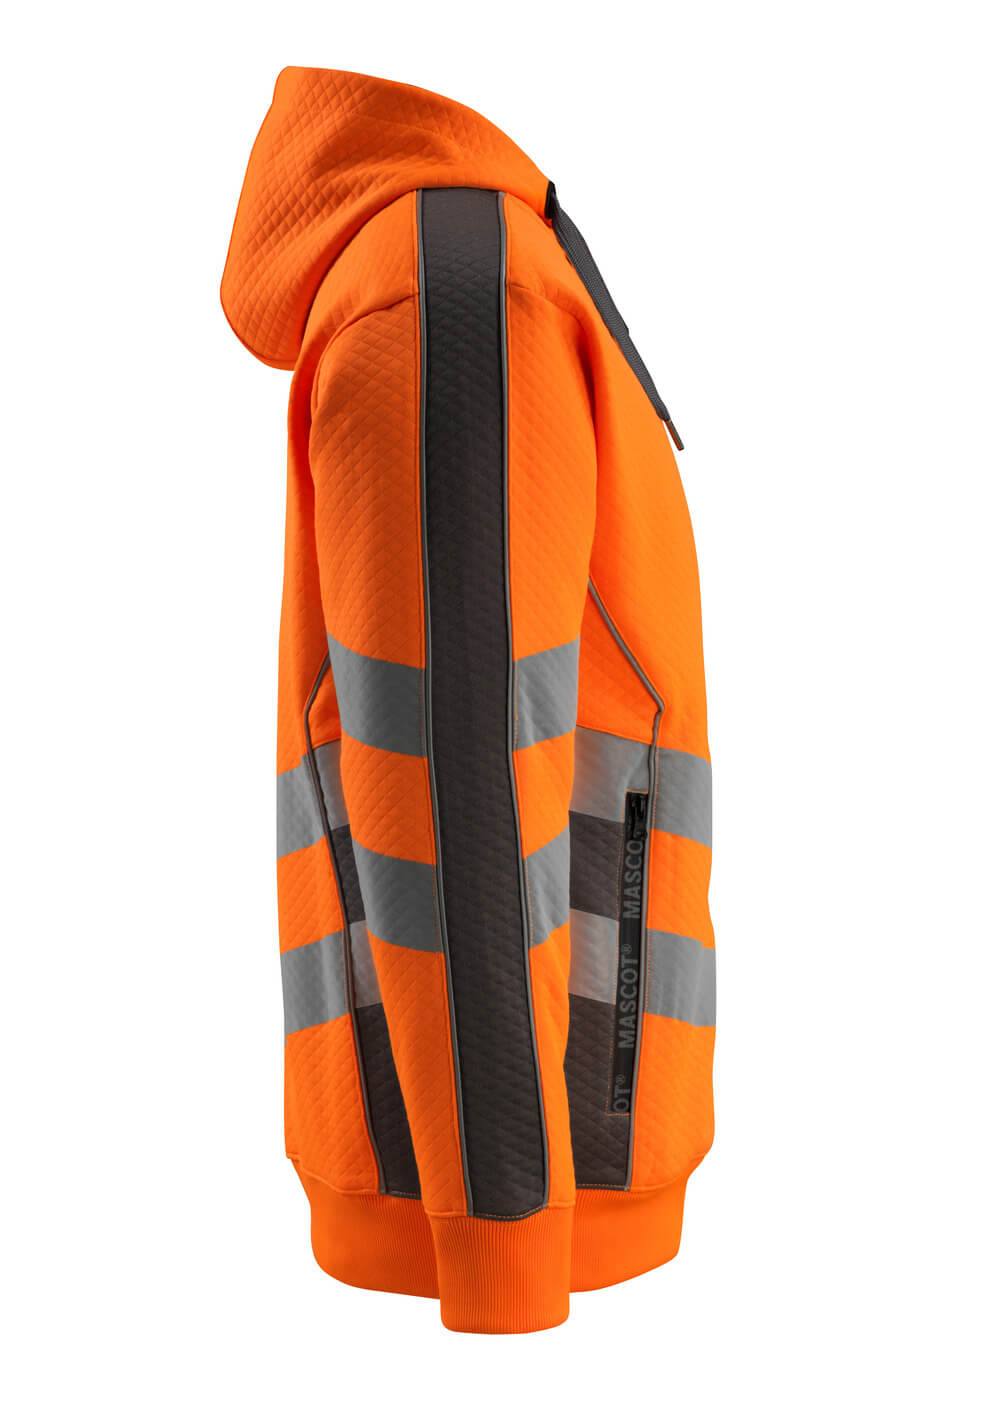 Kapuzensweatshirt mit Rei?verschluss SAFE SUPREME Kapuzensweatshirt mit Rei?verschluss in Farbe Hi-vis Orange/Dunkelanthrazit